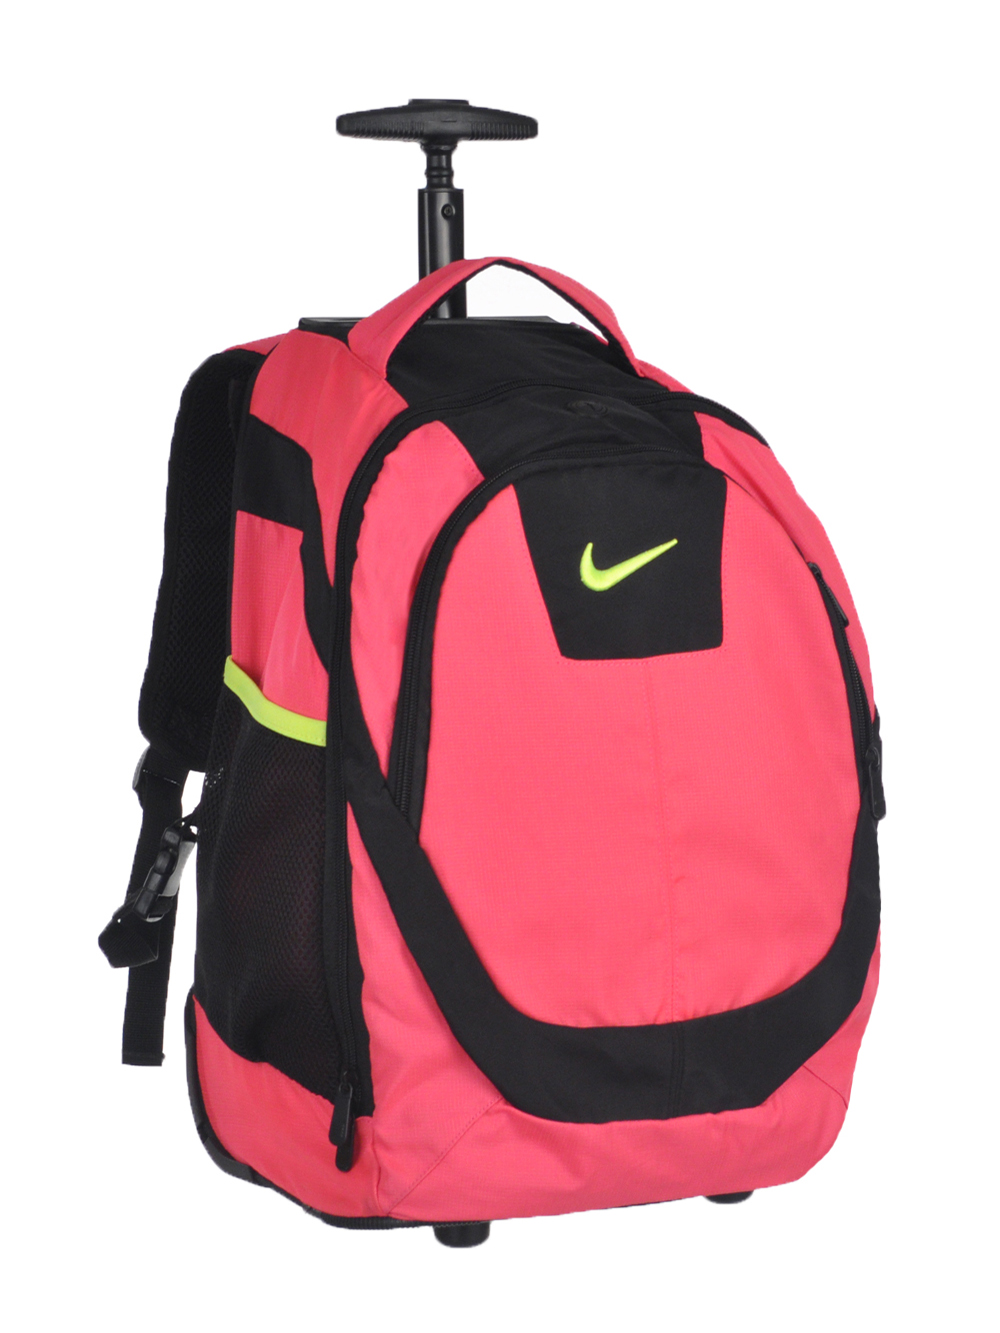 dslr backpack